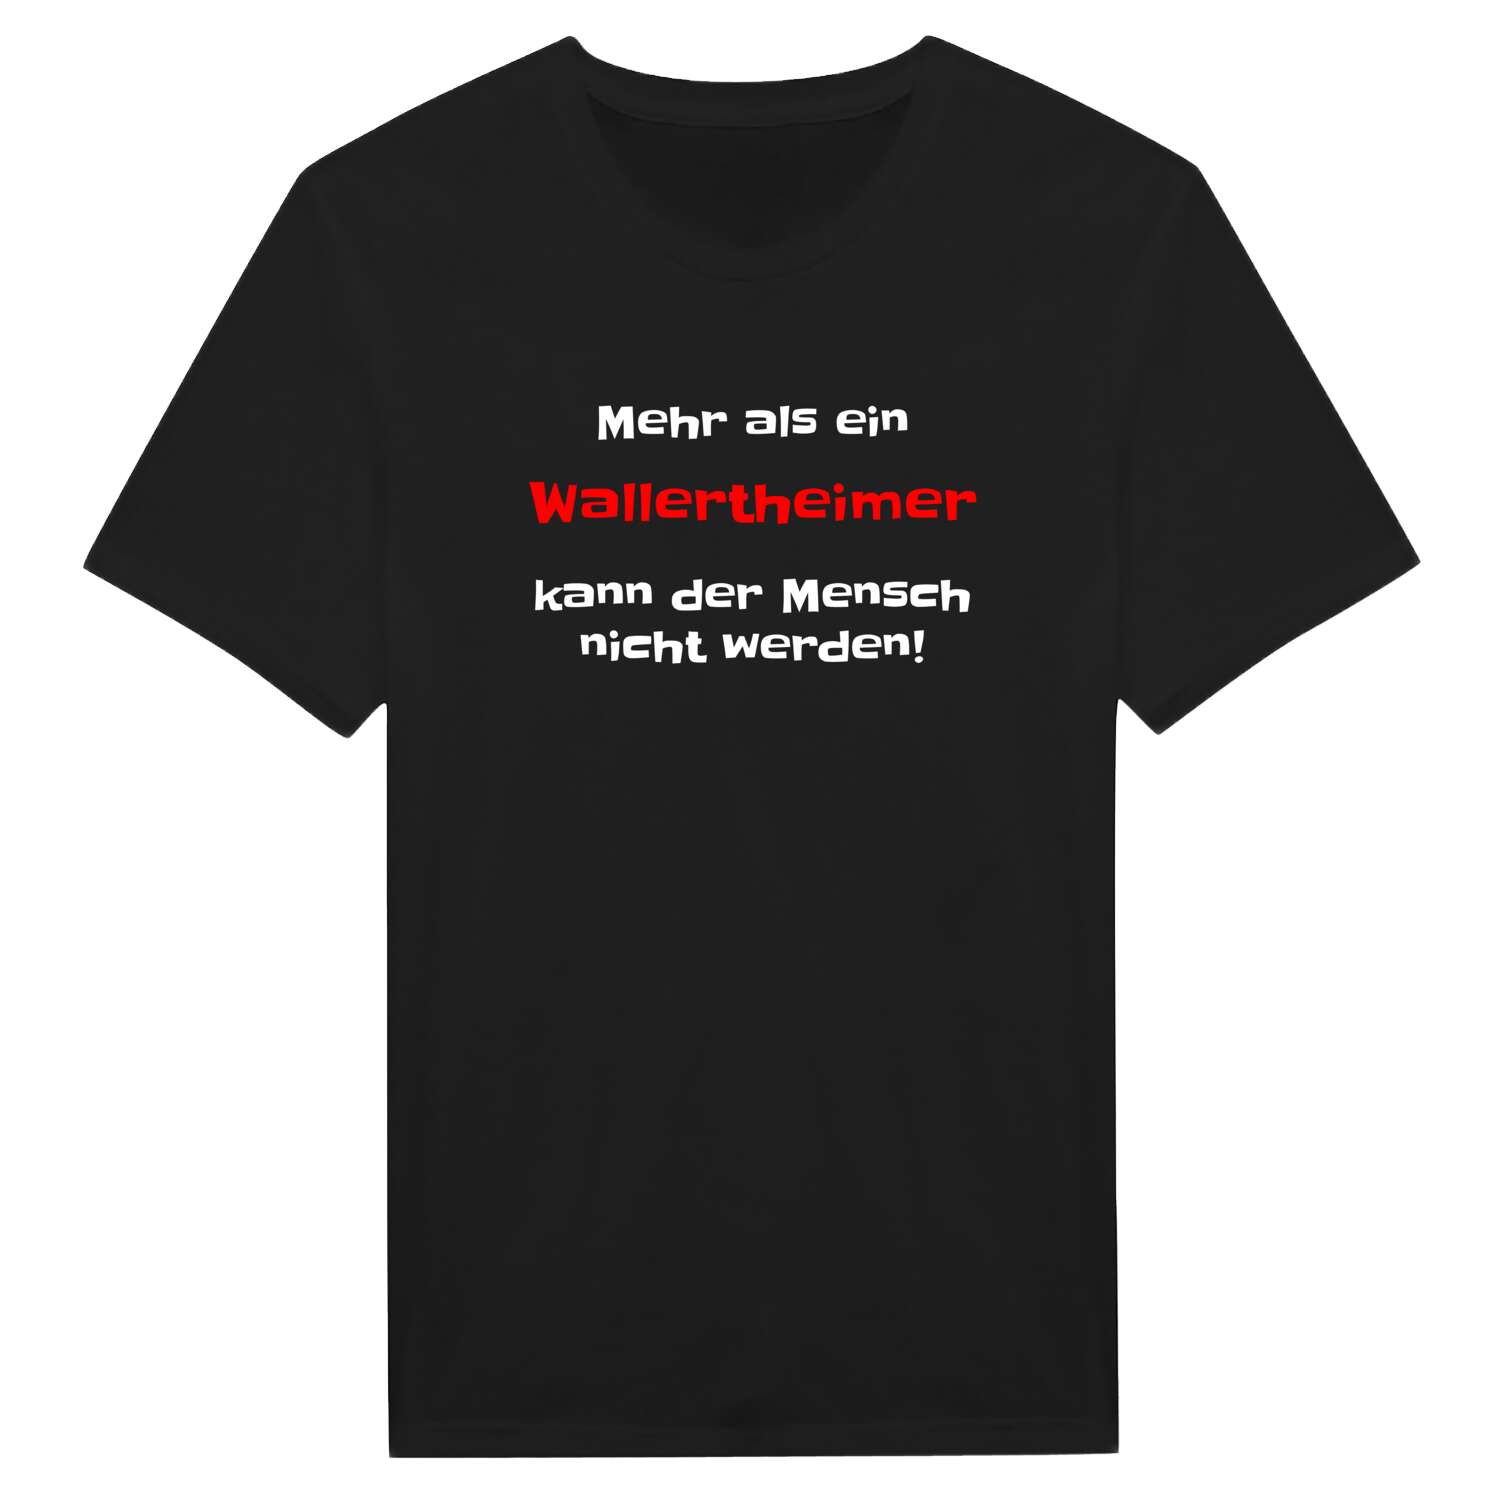 Wallertheim T-Shirt »Mehr als ein«